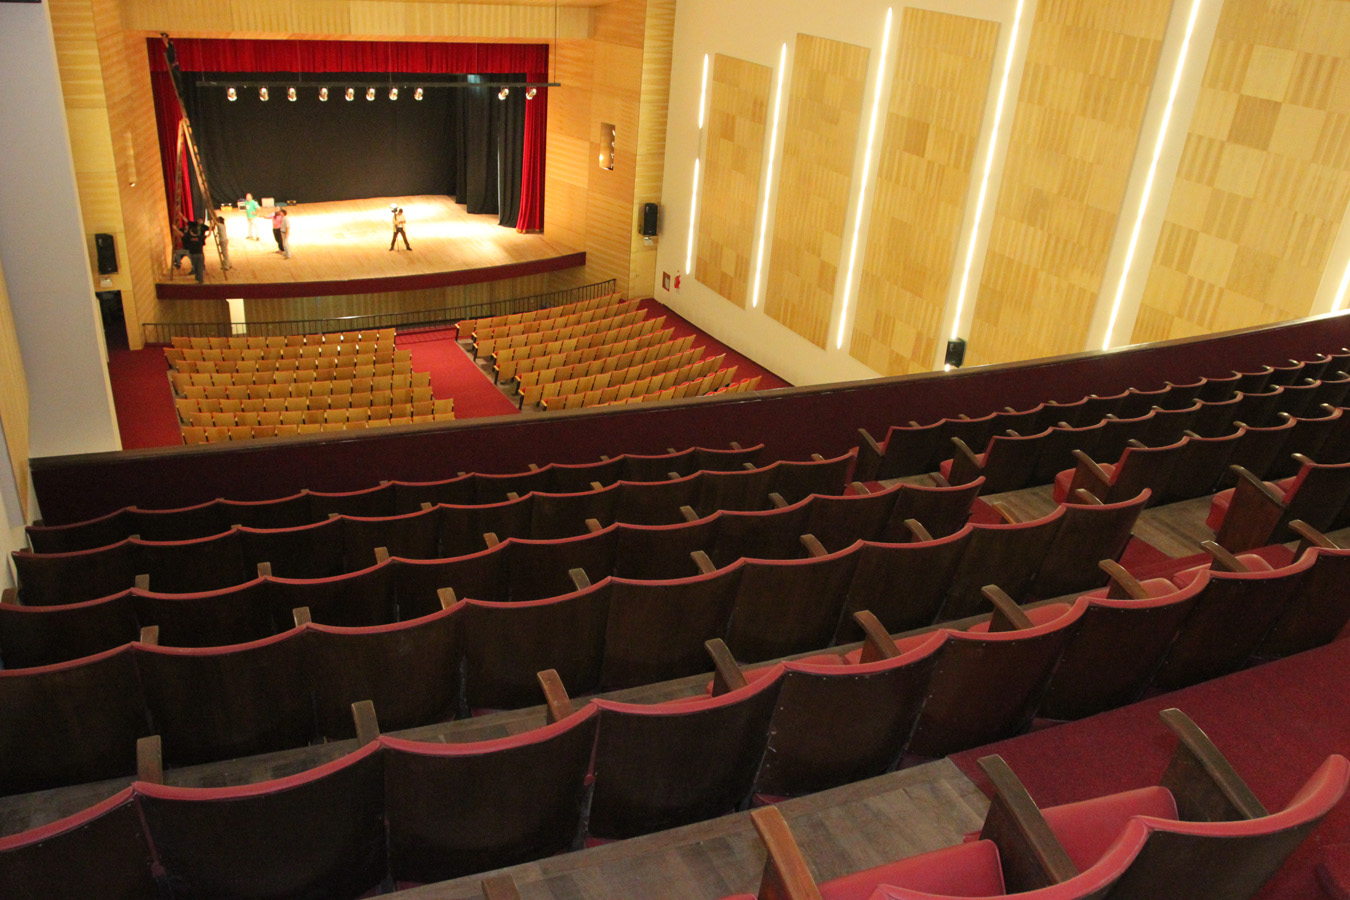 TOTALMENTE NUEVO: El teatro guarda en su interior una lujosa sala con una iluminación y acústica envidiable.